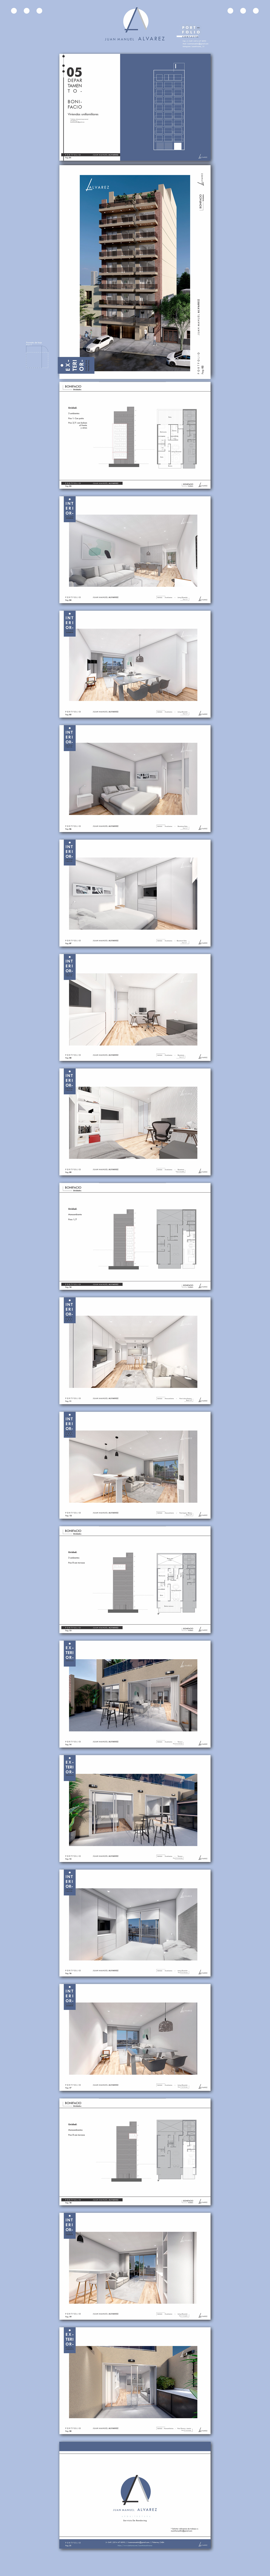 3D Architecture portfolio arquitectura arquitecture design Lumion Render photoshop portfolio rendering SketchUP